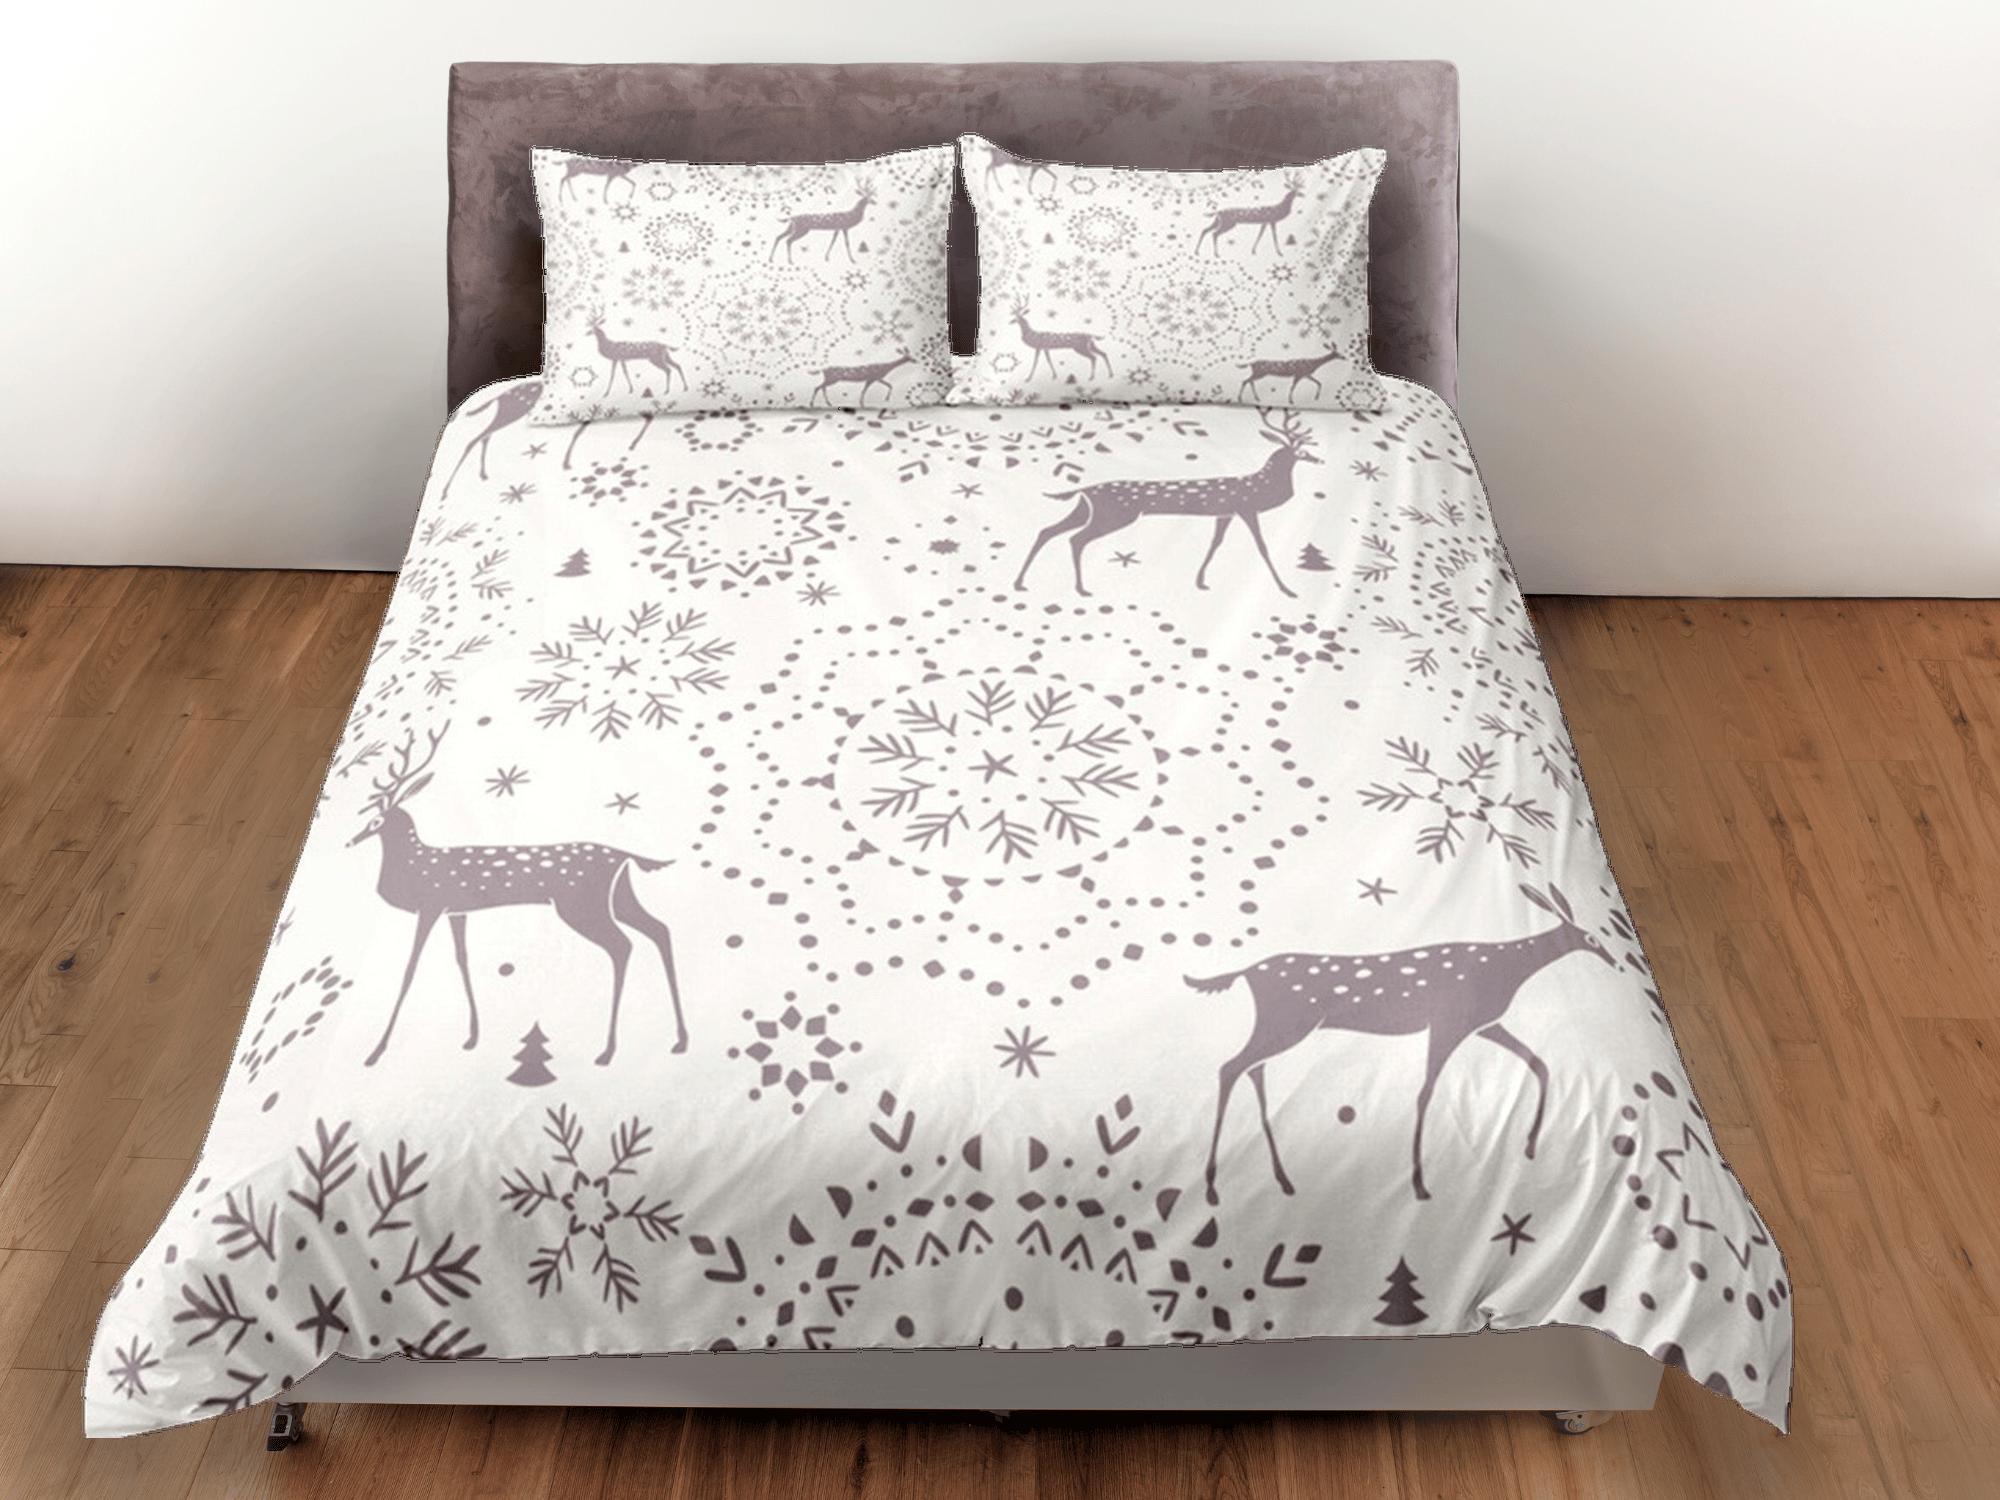 daintyduvet Duvet Cover Set Boho Bedding, Winter Blanket Snowflakes Dorm Bedding & Pillowcase